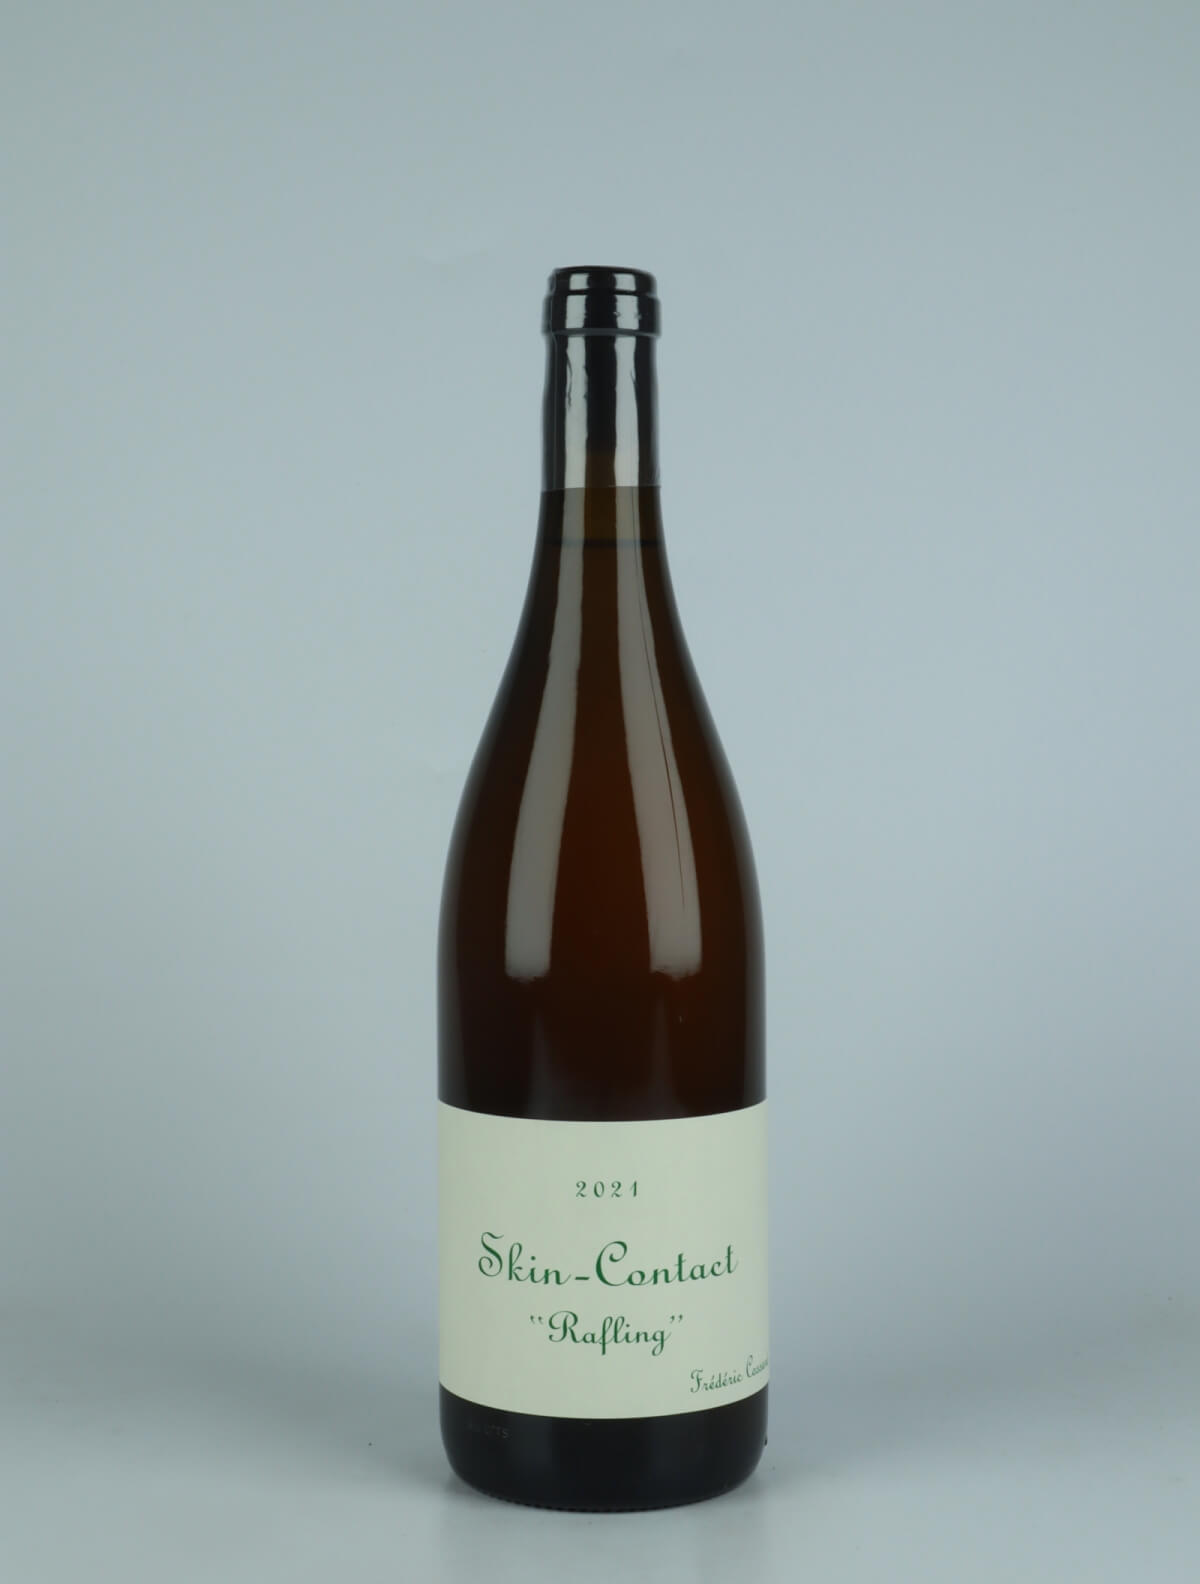 En flaske 2021 Skin-Contact - Rafling Orange vin fra Frédéric Cossard, Bourgogne i Frankrig